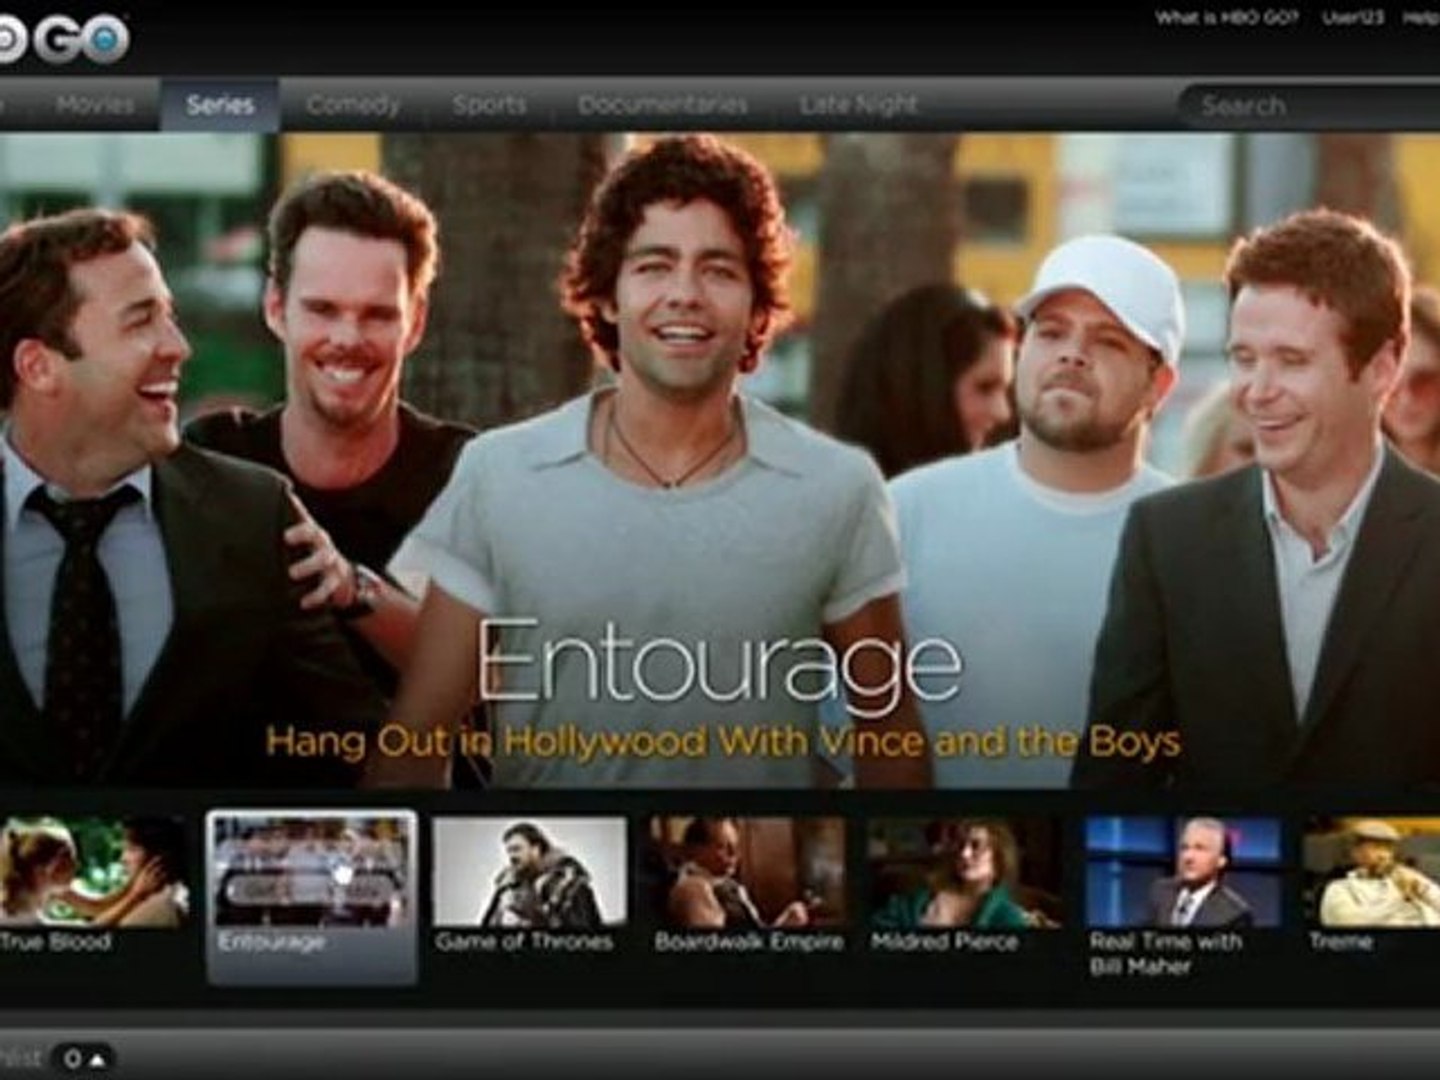 HBO GO: Entourage - Watchlist (HBO)